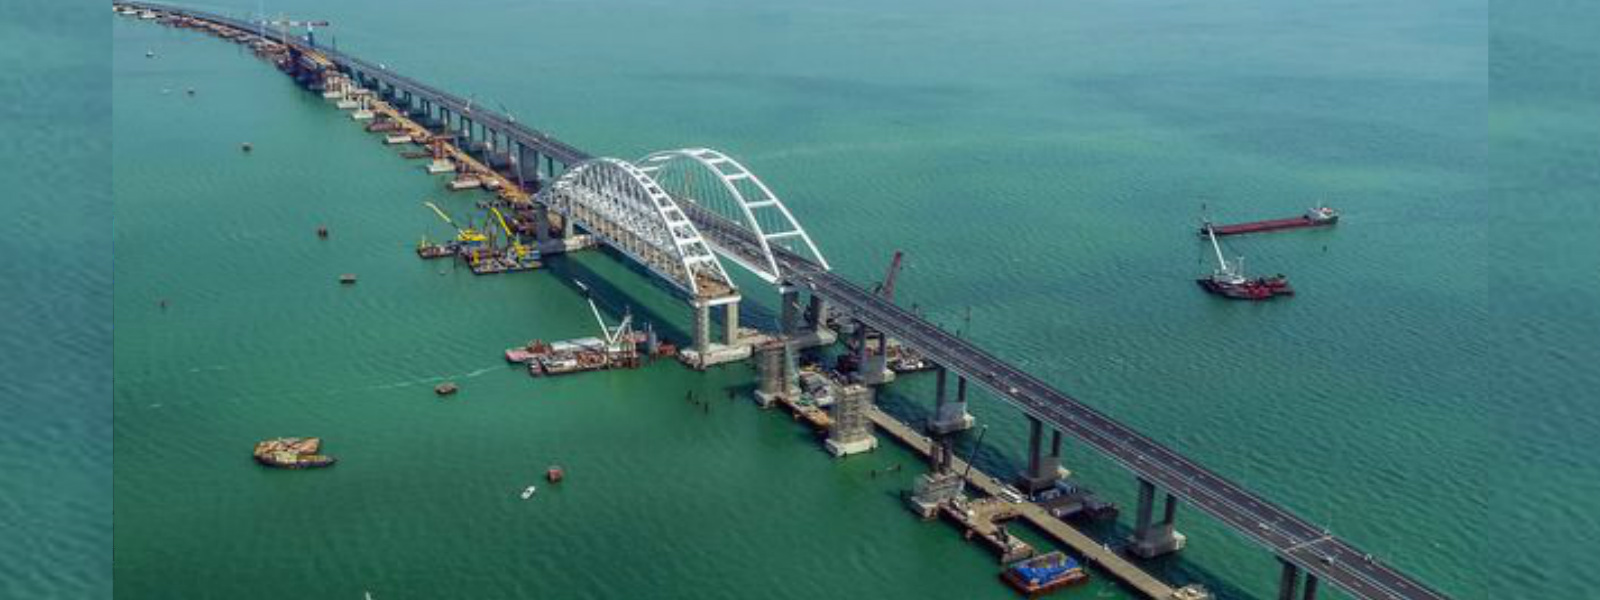 Putin opens controversial Russia-Crimea bridge